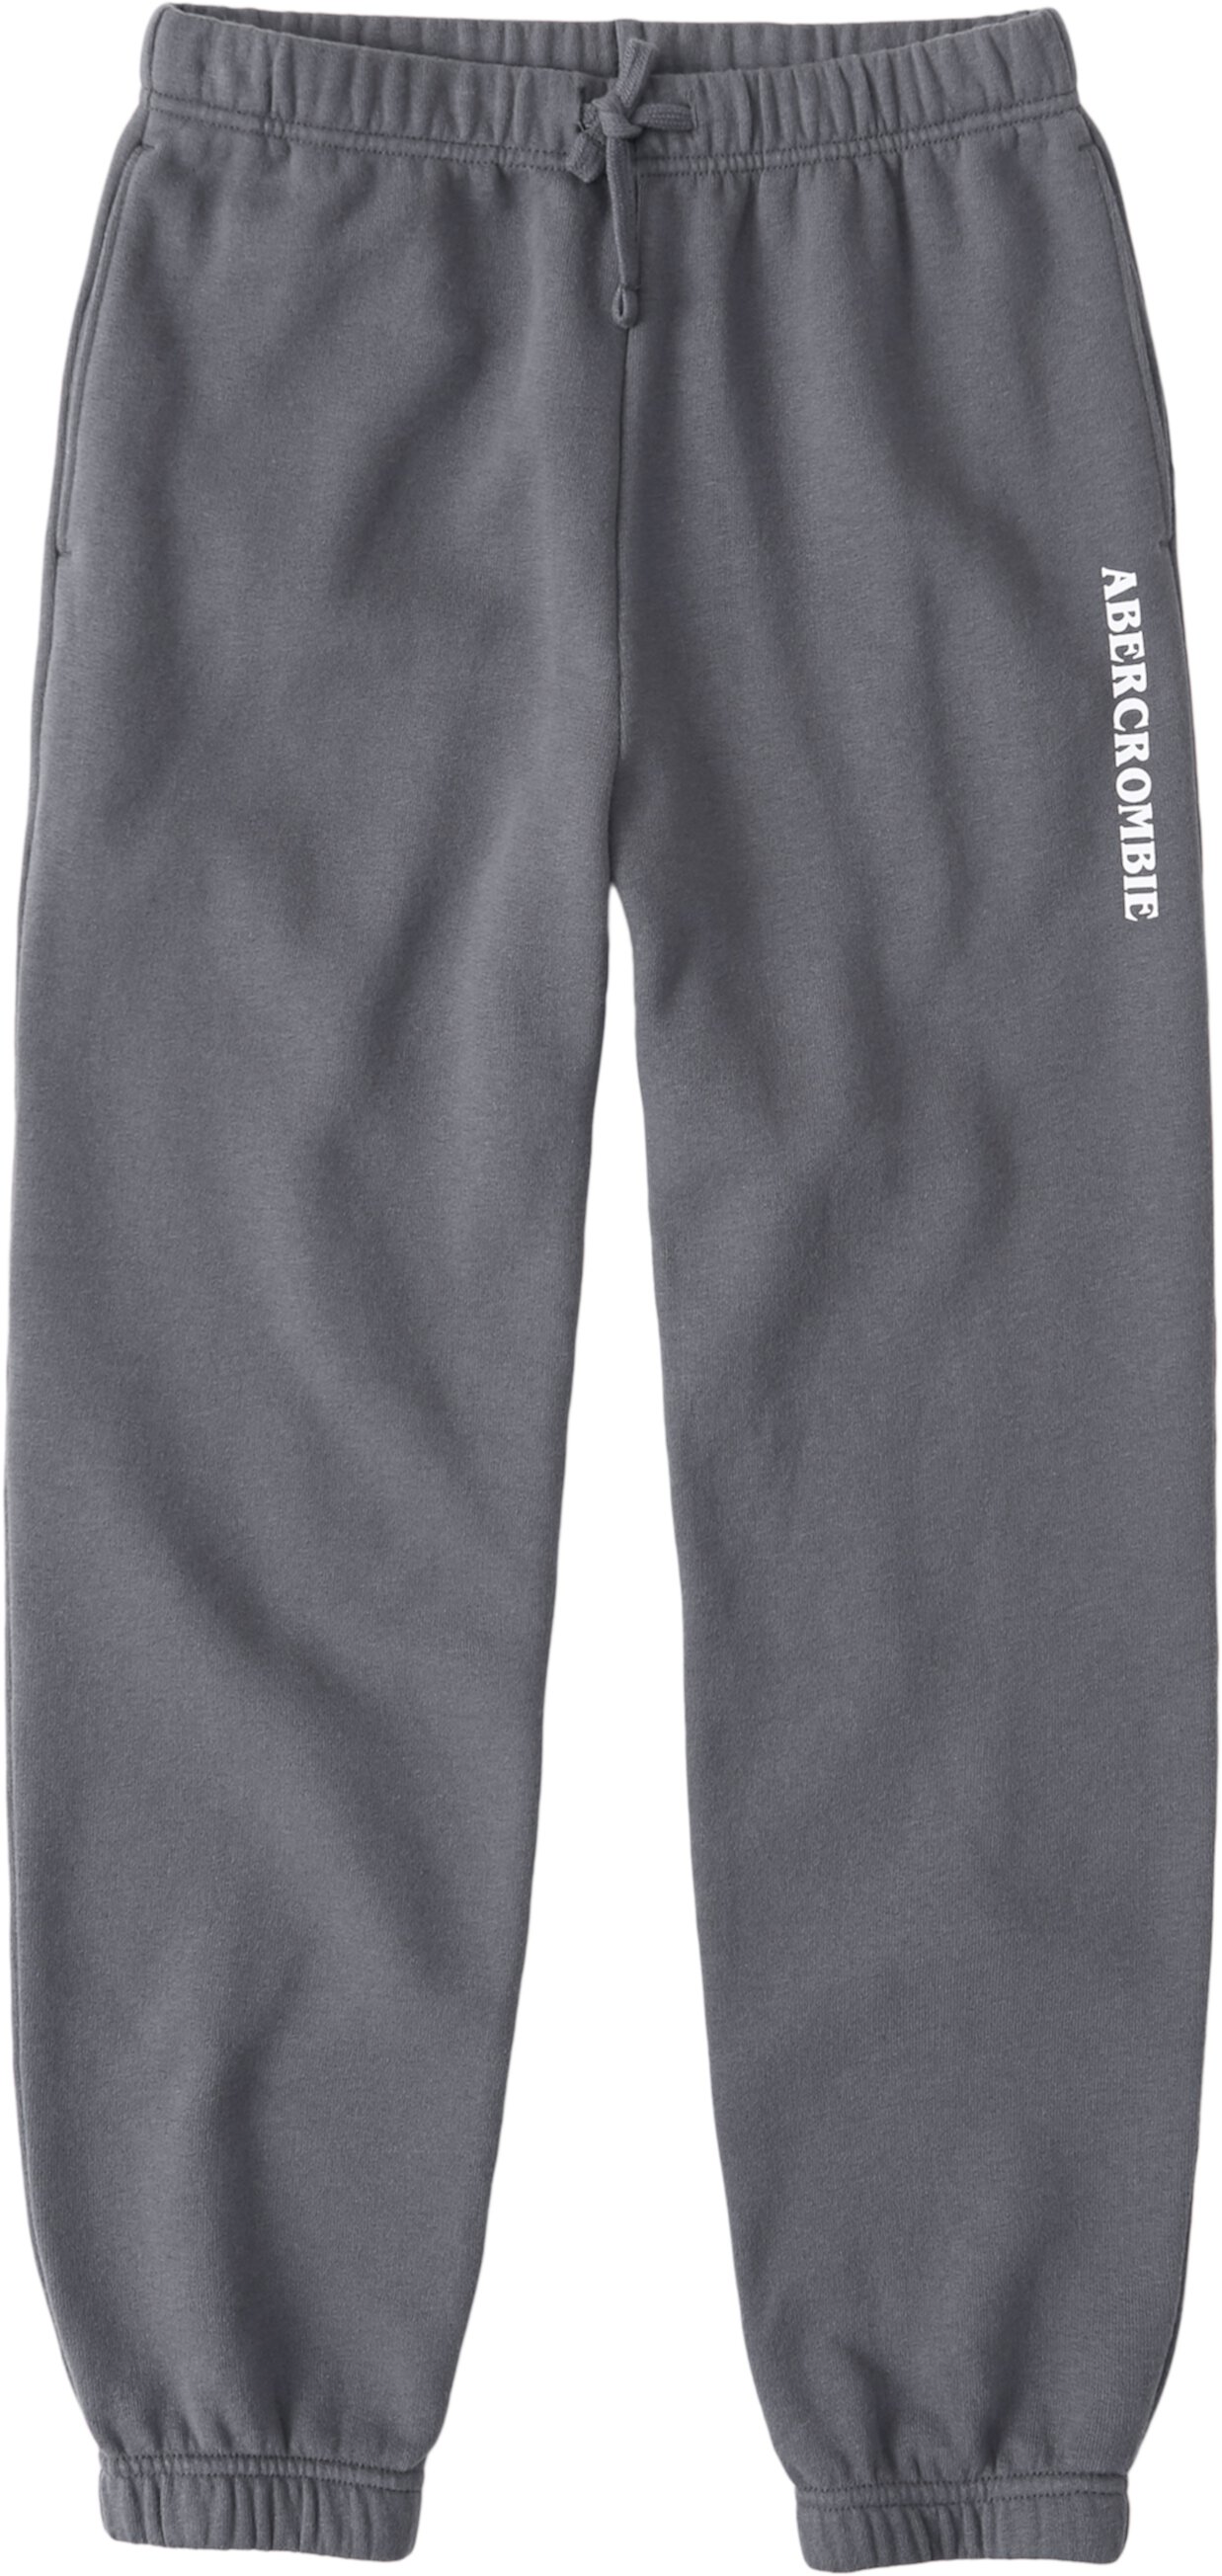 Классические спортивные штаны с логотипом (для маленьких и больших детей) Abercrombie kids